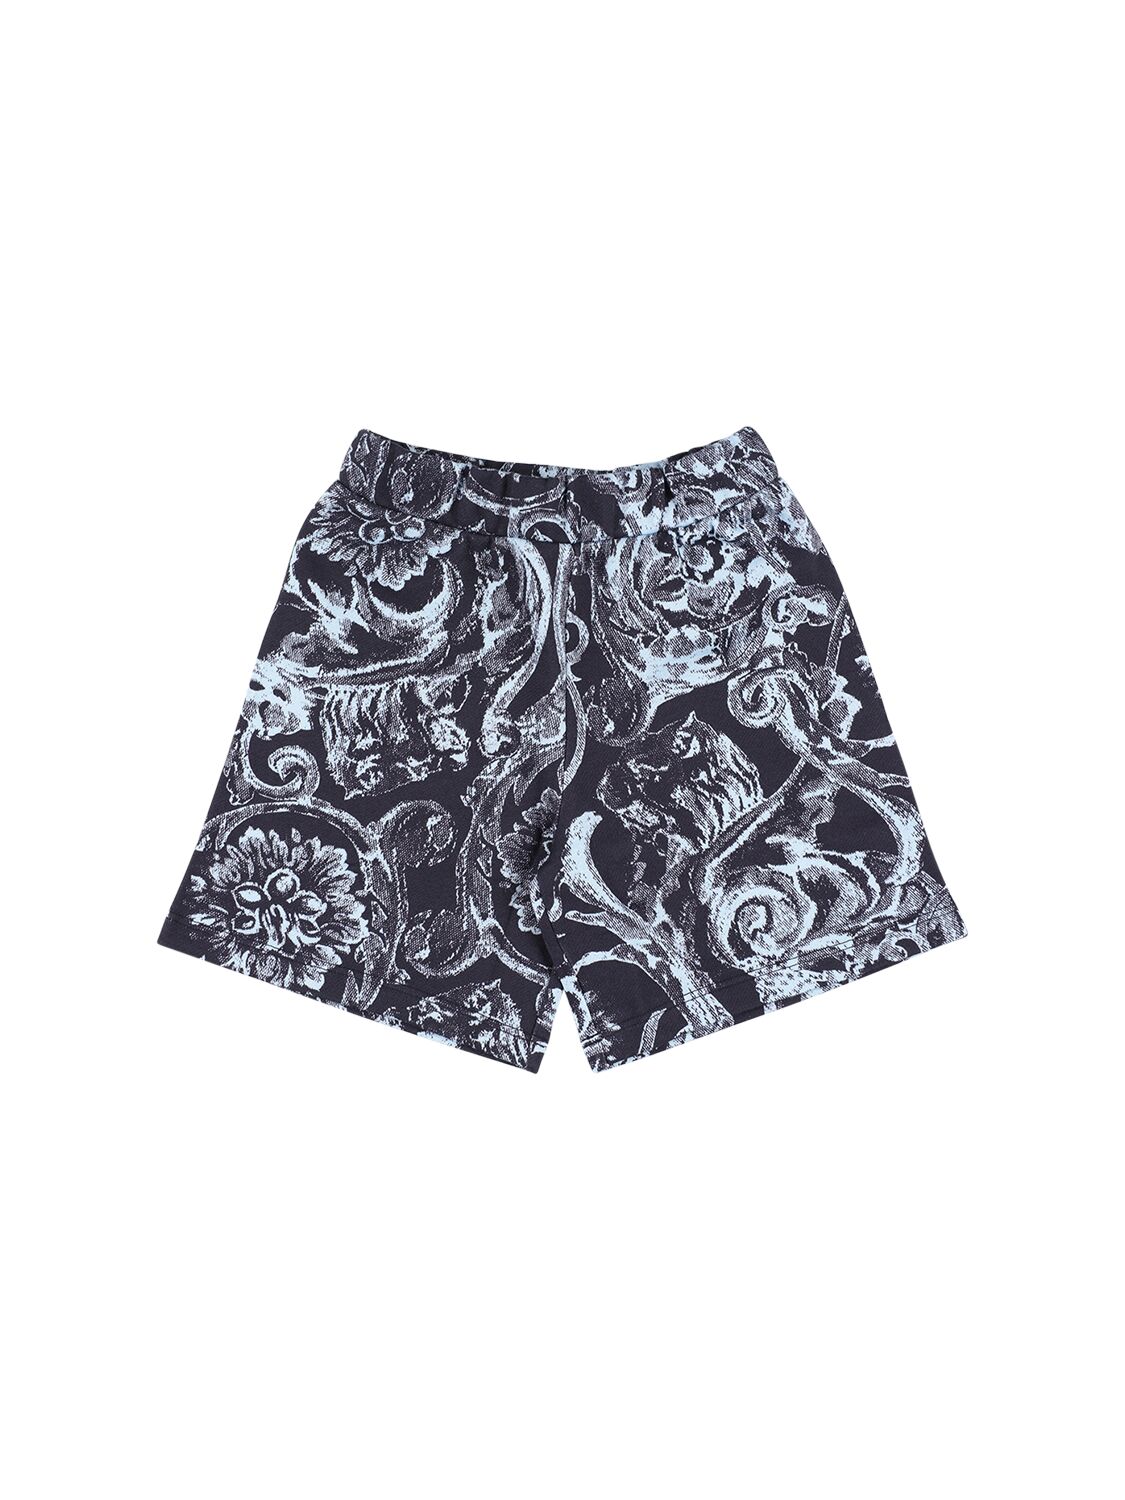 Image of Baroque Print Cotton Fleece Shorts